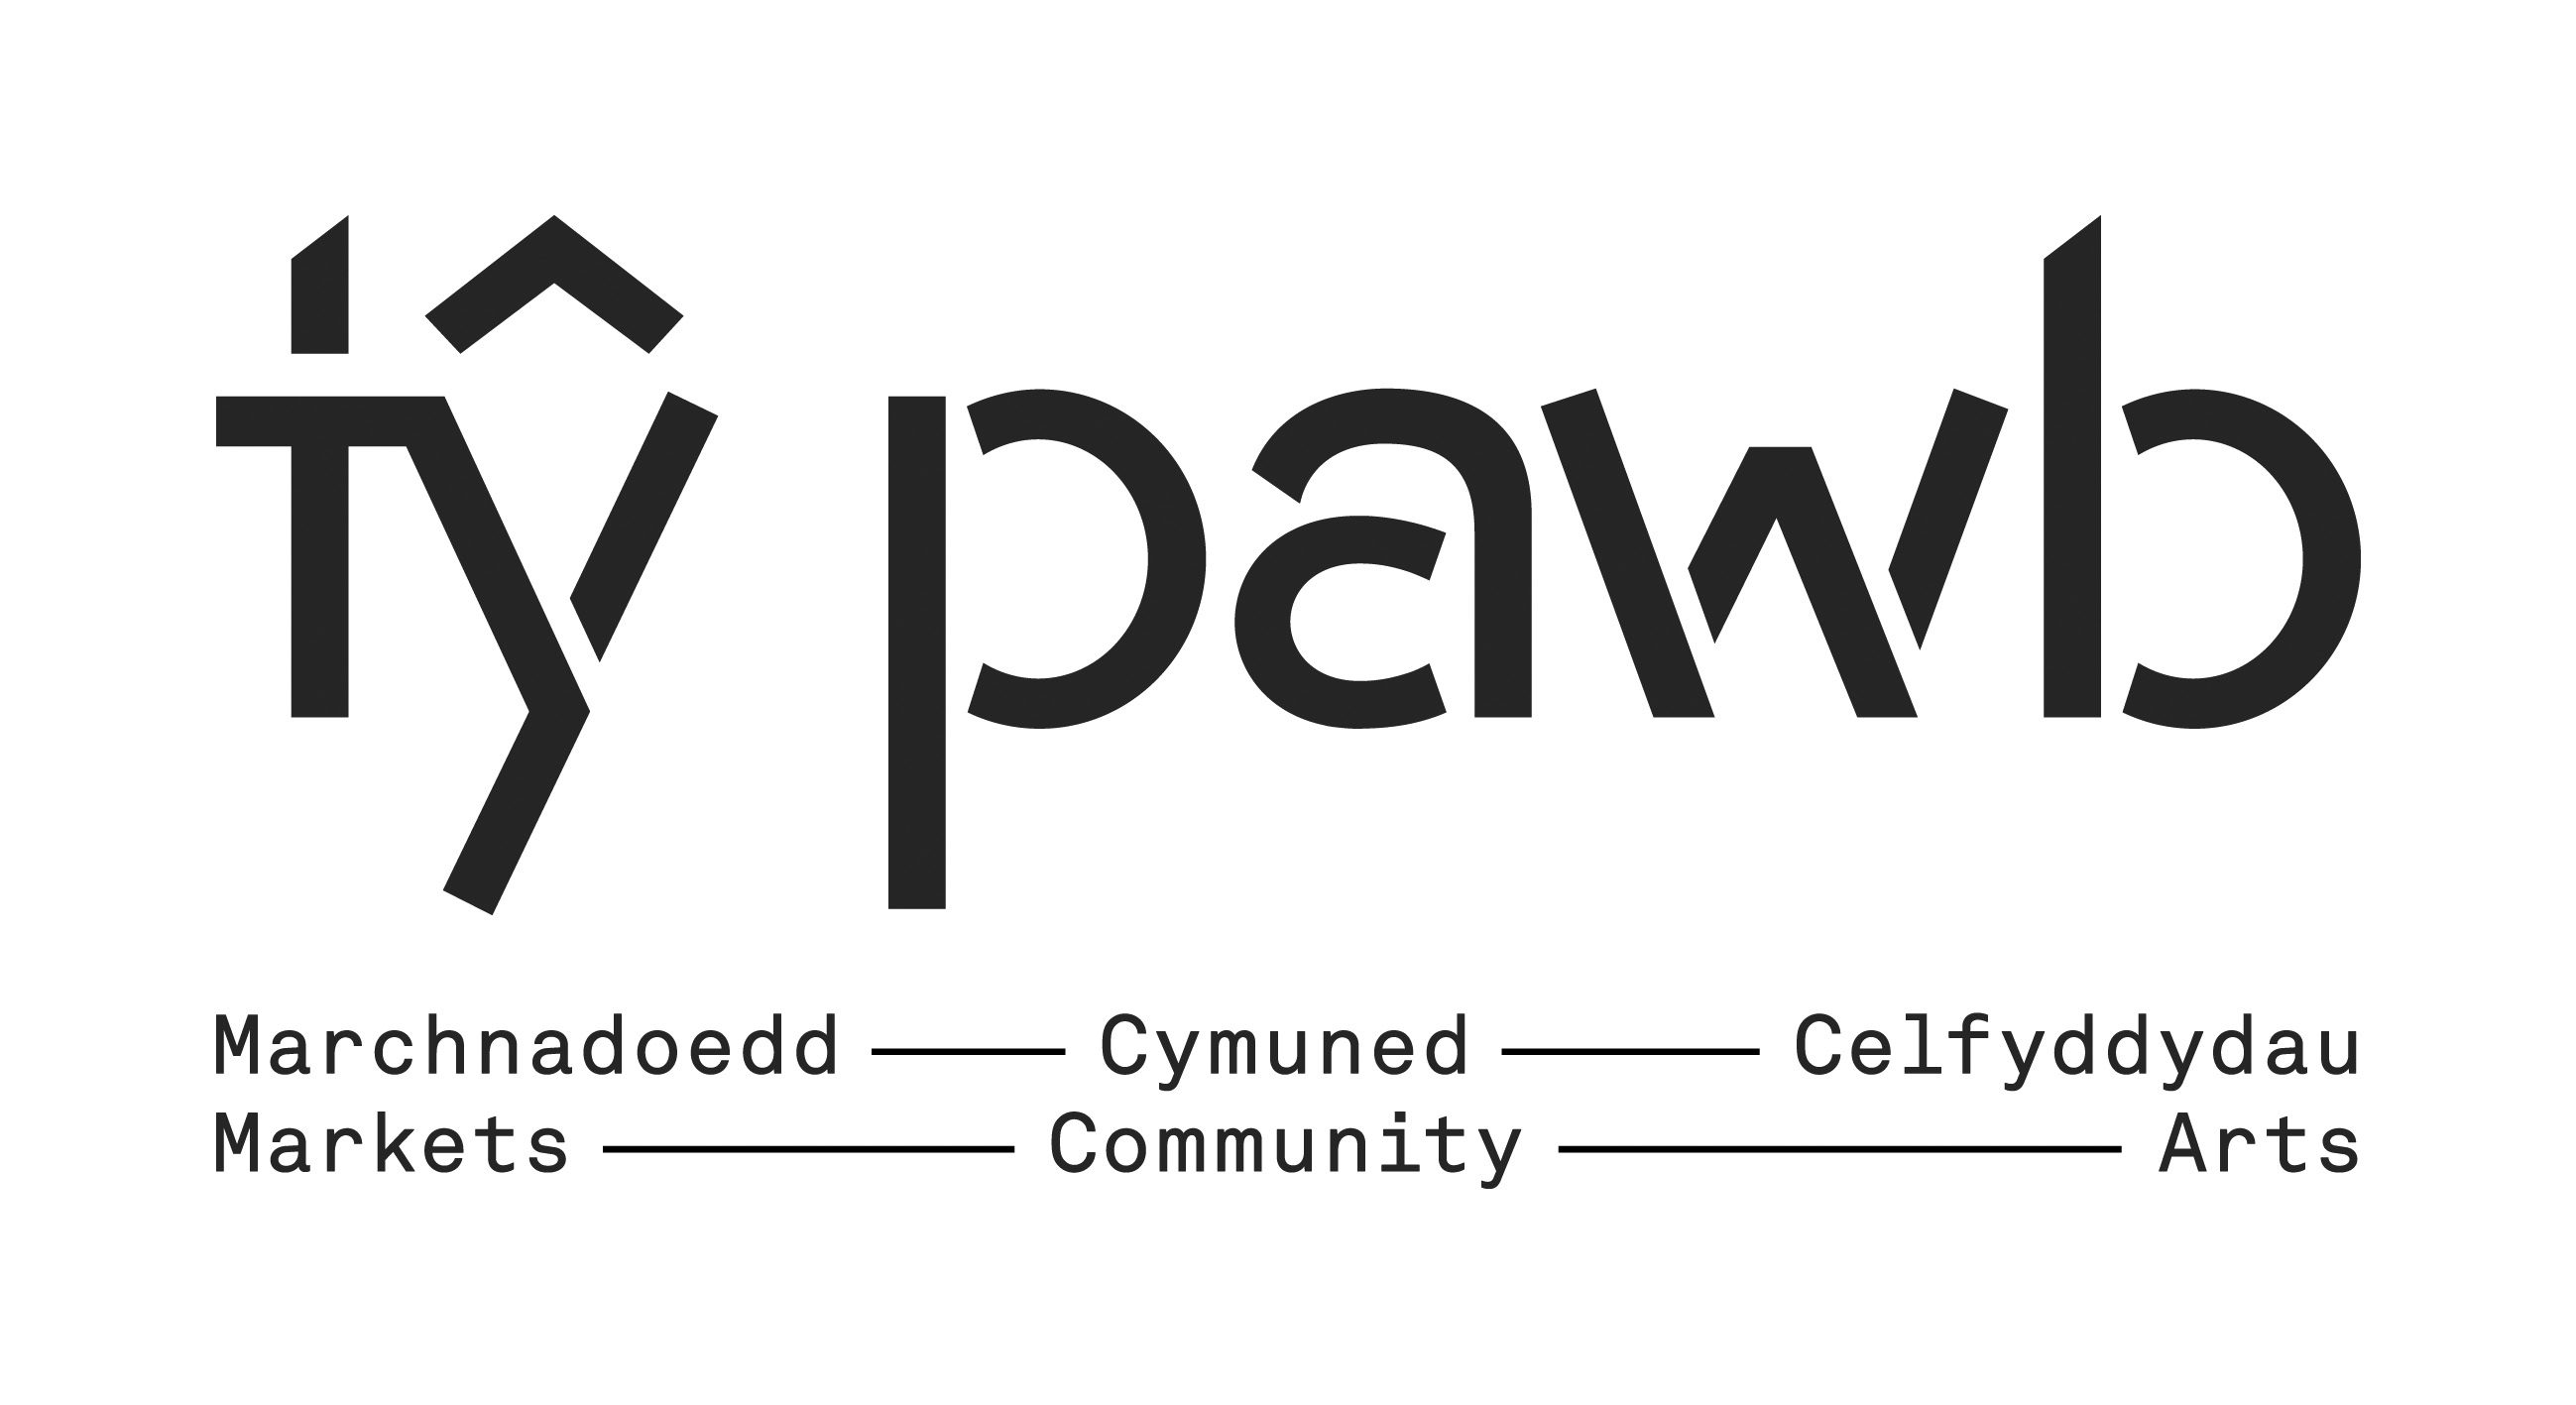 New Logo for Tŷ Pawb Revealed